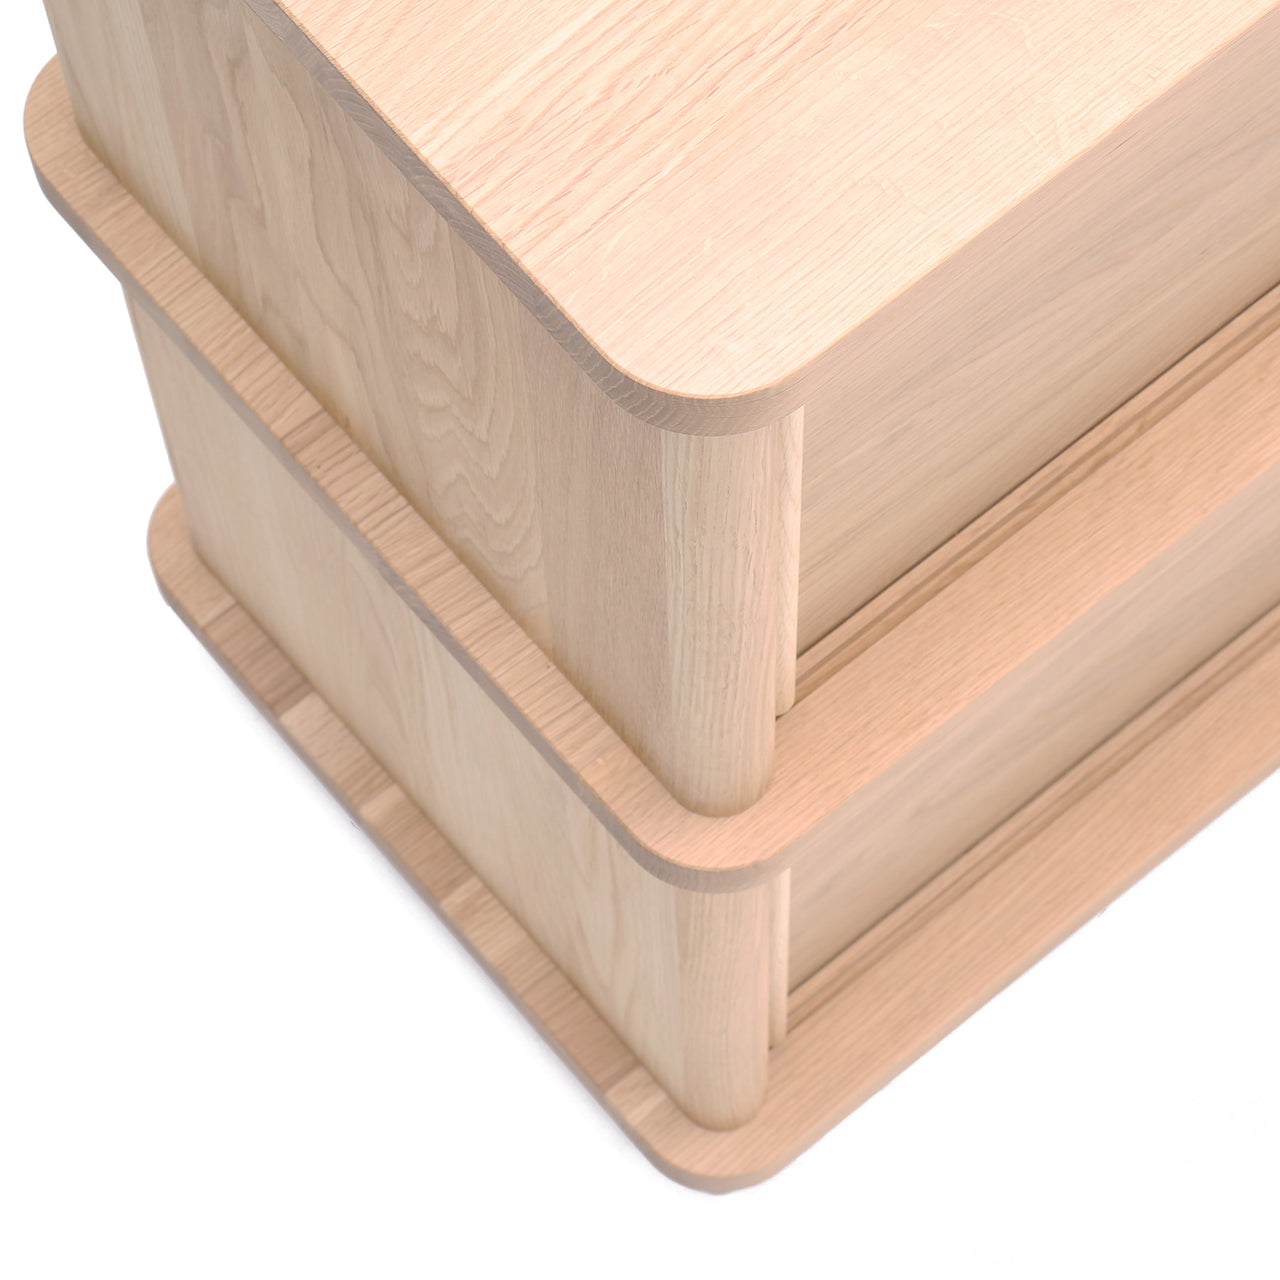 Prop Sideboard: Pure Oak